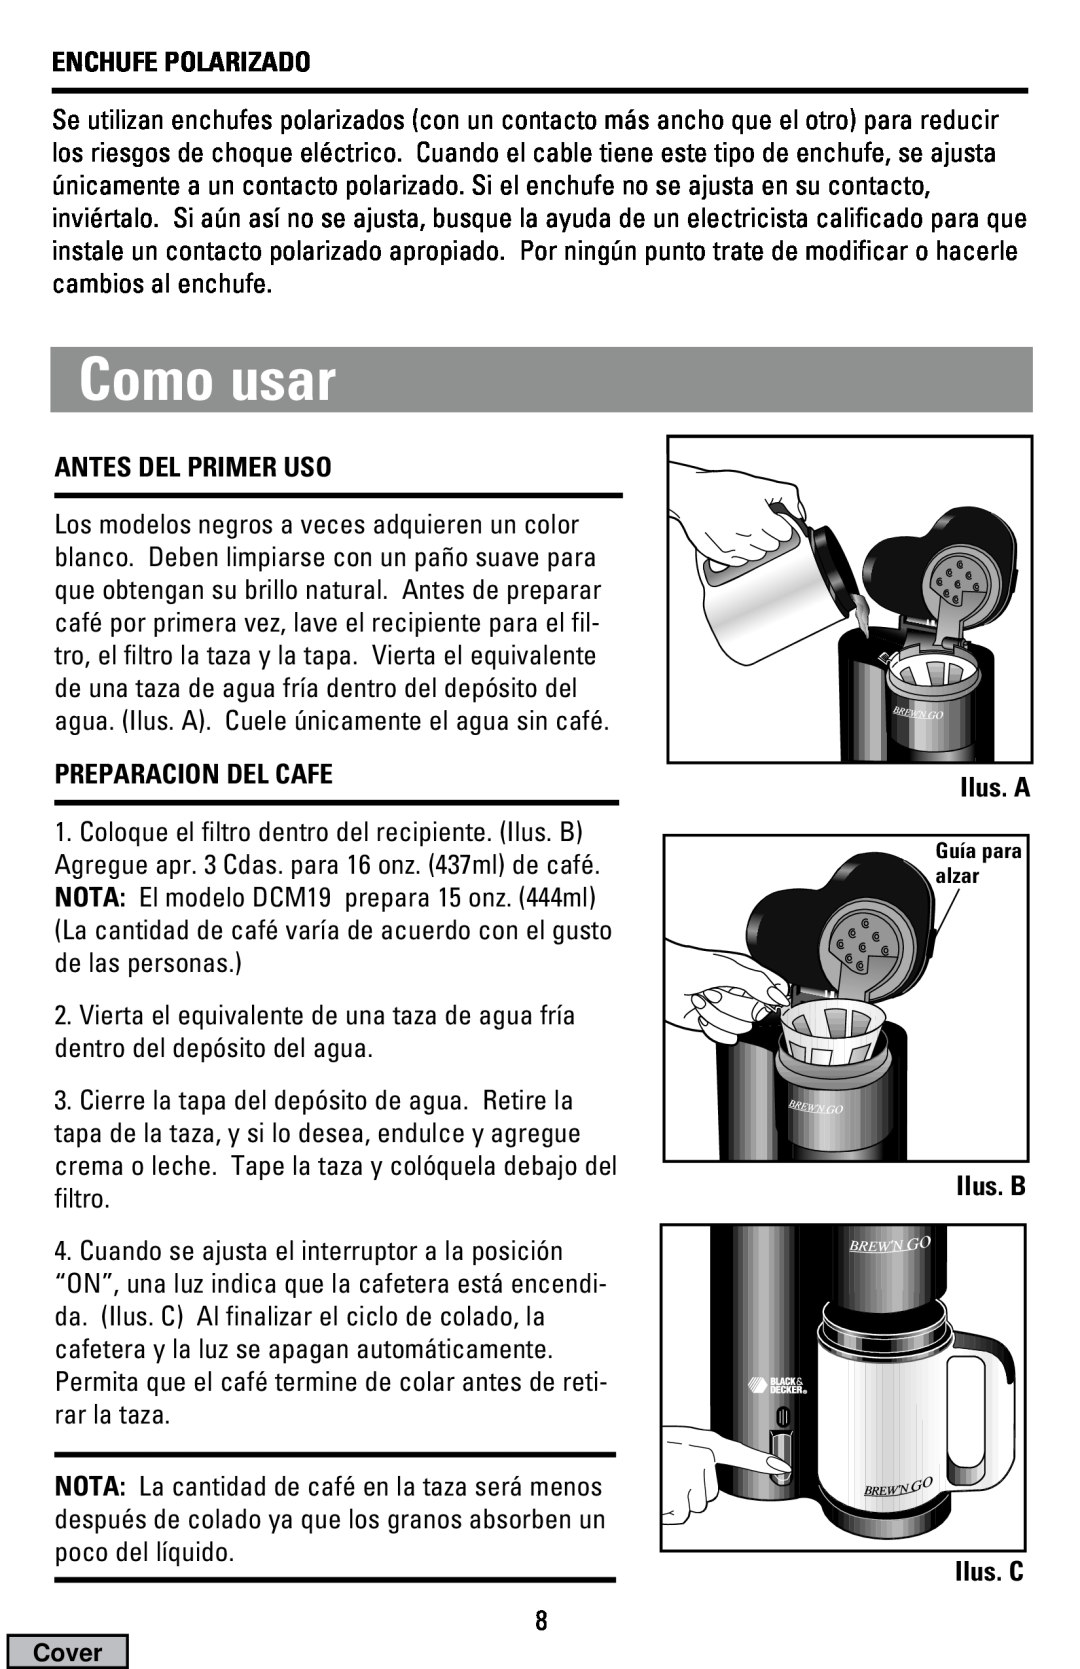 Black & Decker DCM19 Como usar, Enchufe Polarizado, Antes Del Primer Uso, Preparacion Del Cafe, Ilus. A, Ilus. B Ilus. C 